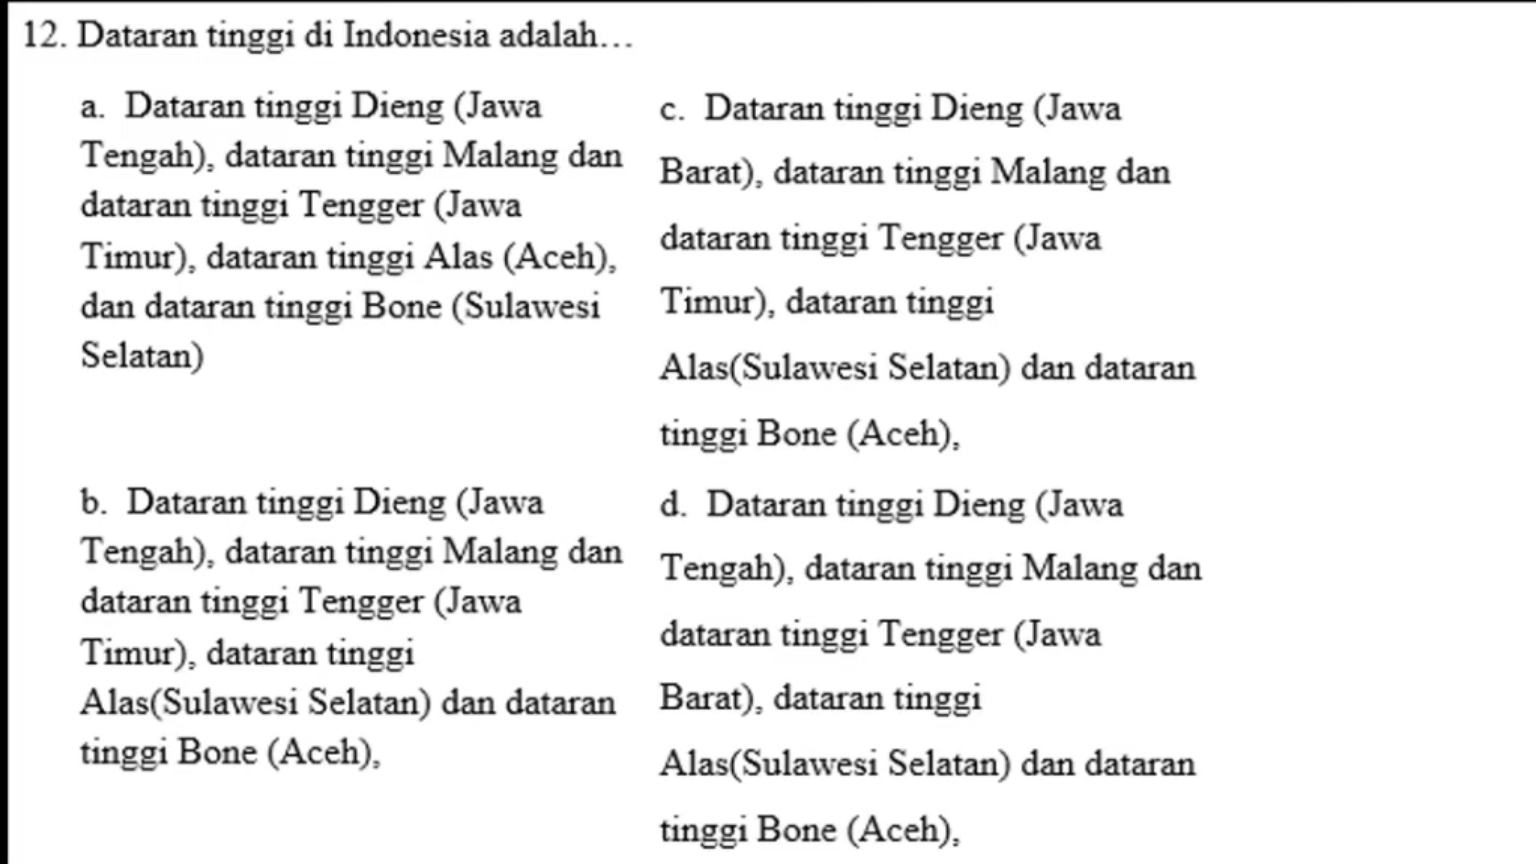 nama nama dataran tinggi di Indonesia